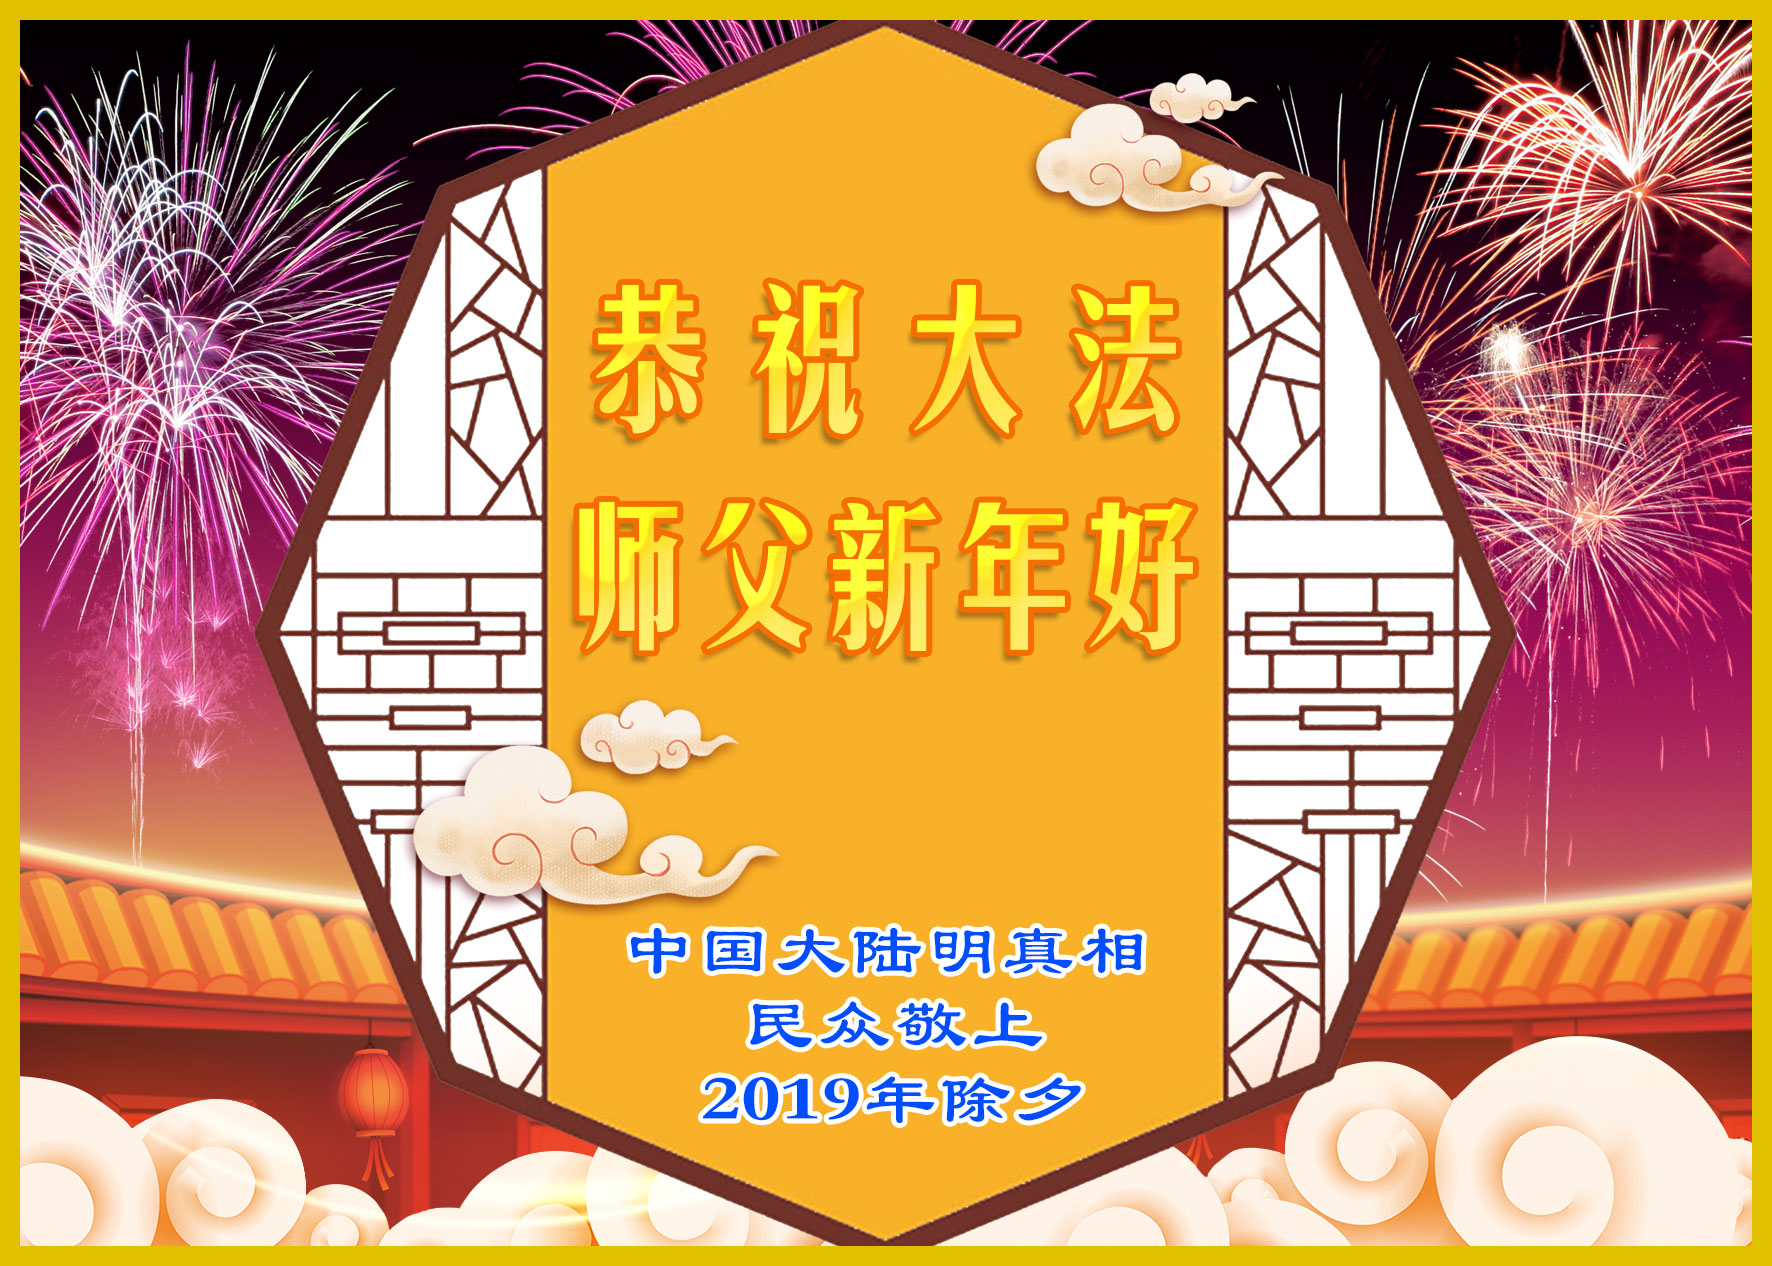 Image for article Des Chinois soutenant Dafa et diffusant la vérité souhaitent respectueusement au Maître de Dafa un bon Nouvel An chinois !